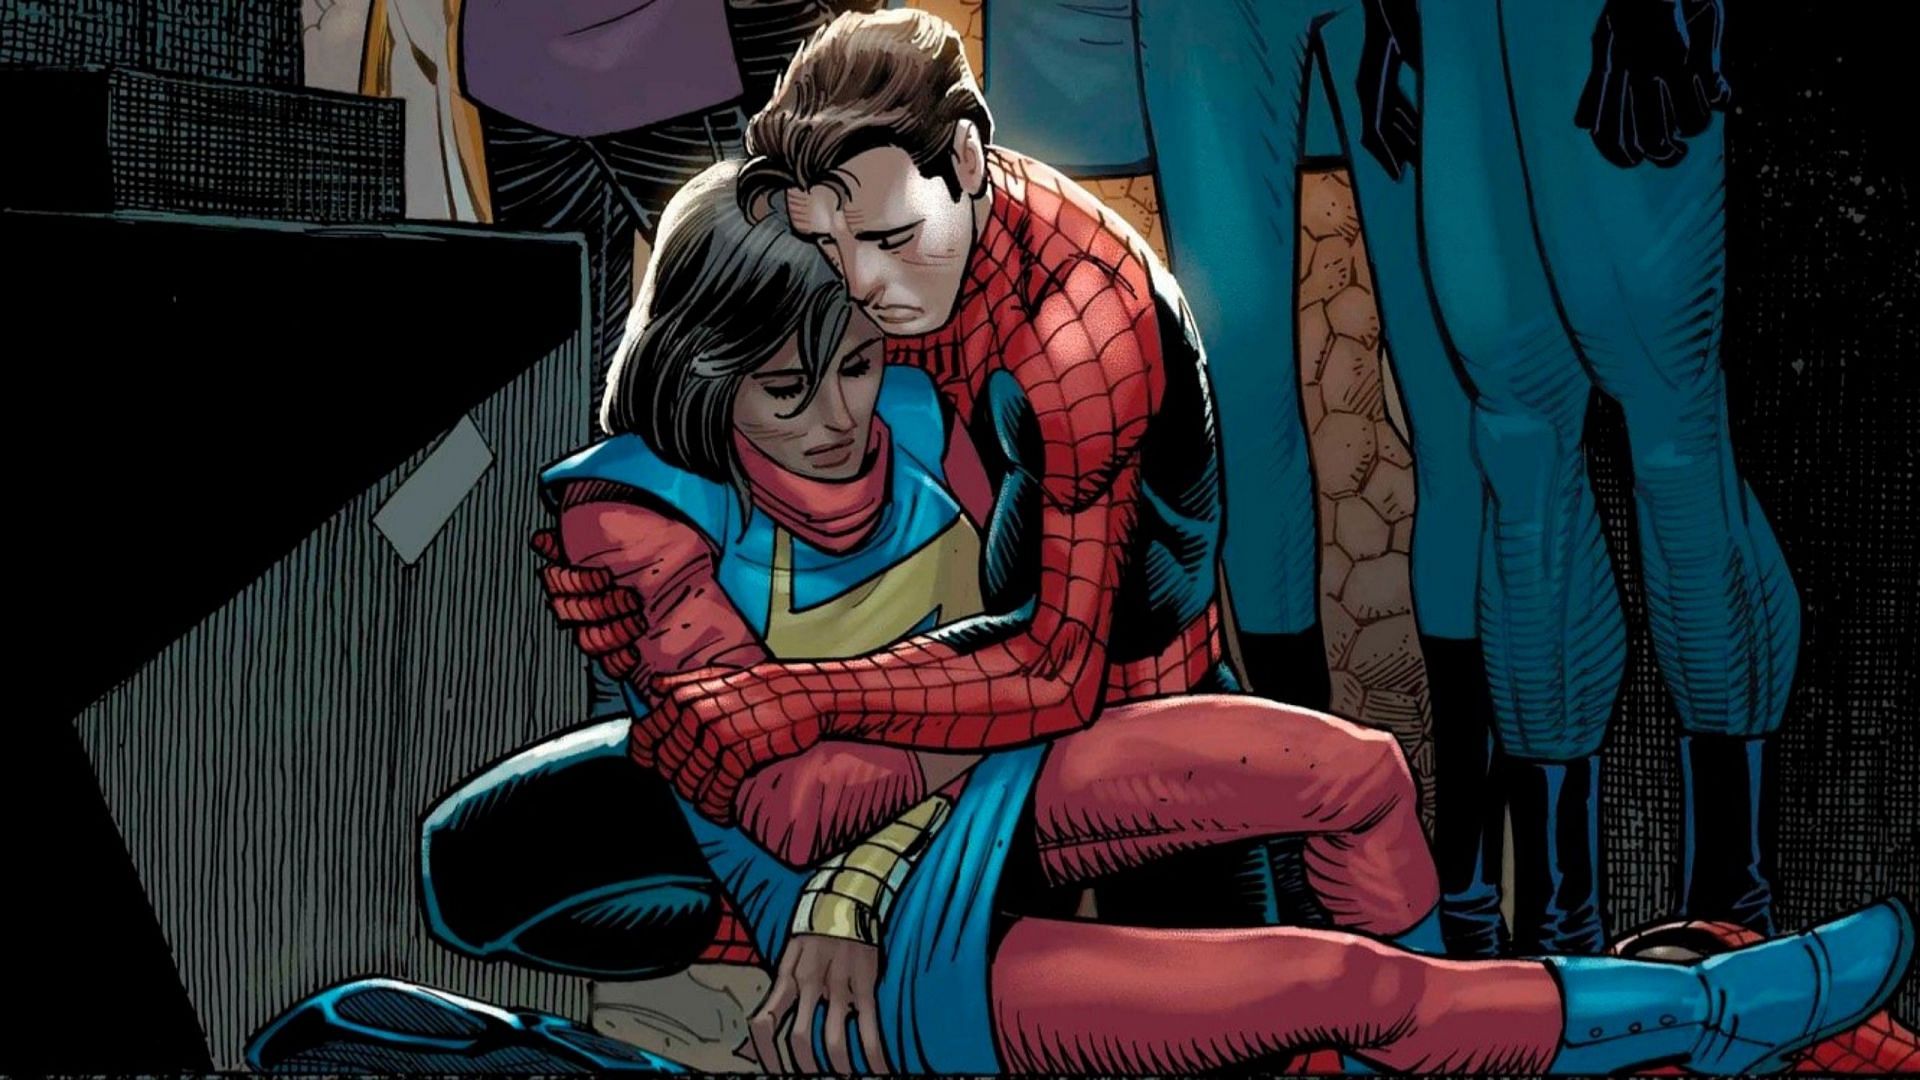 Peter Parker reacting to Kamala Khan